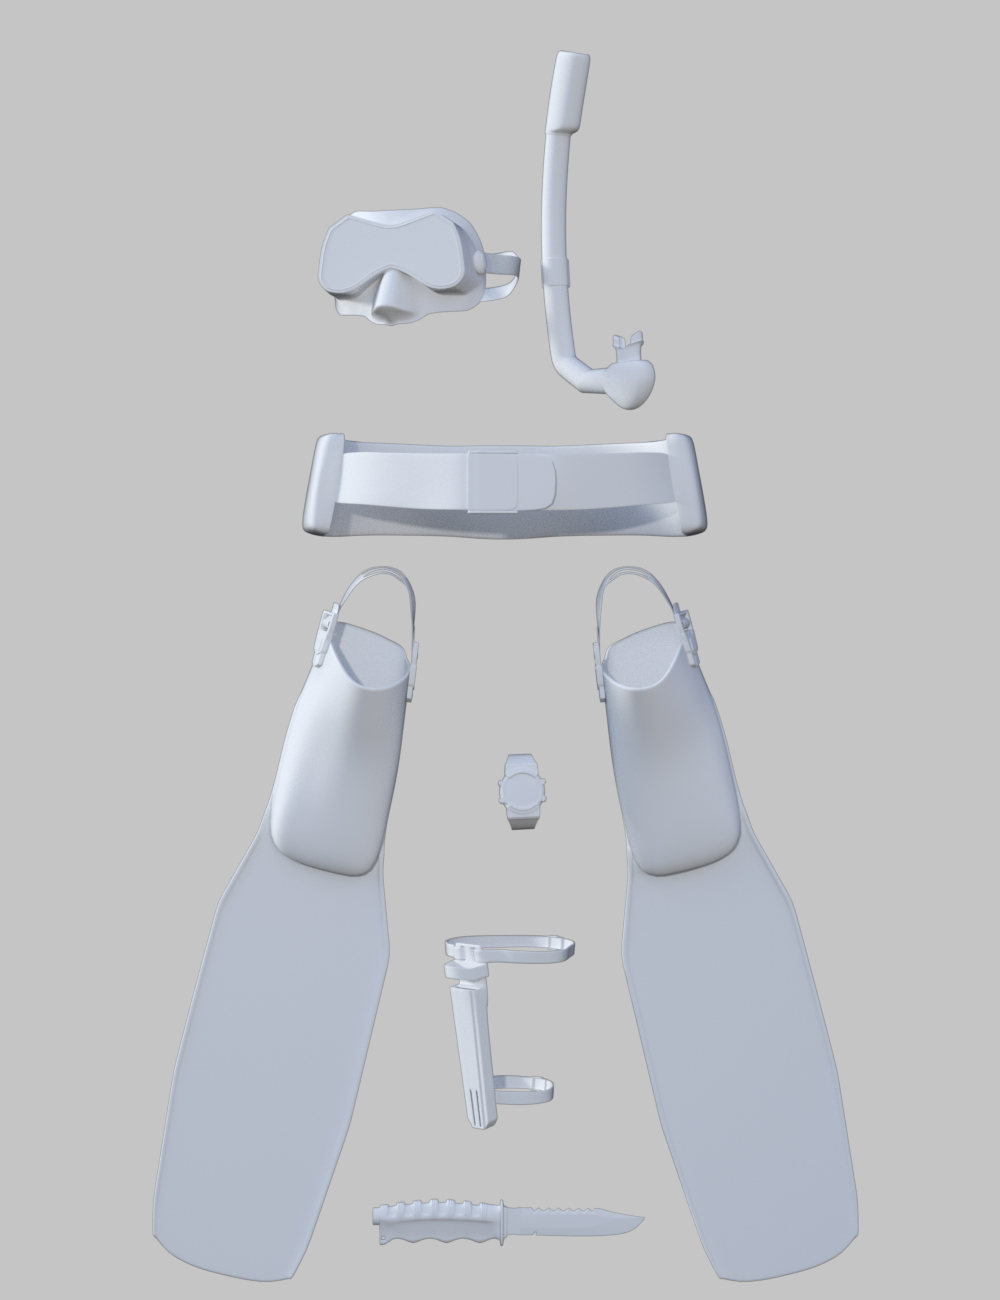 Scuba Gear for Genesis 3 Male by: dglidden, 3D Models by Daz 3D